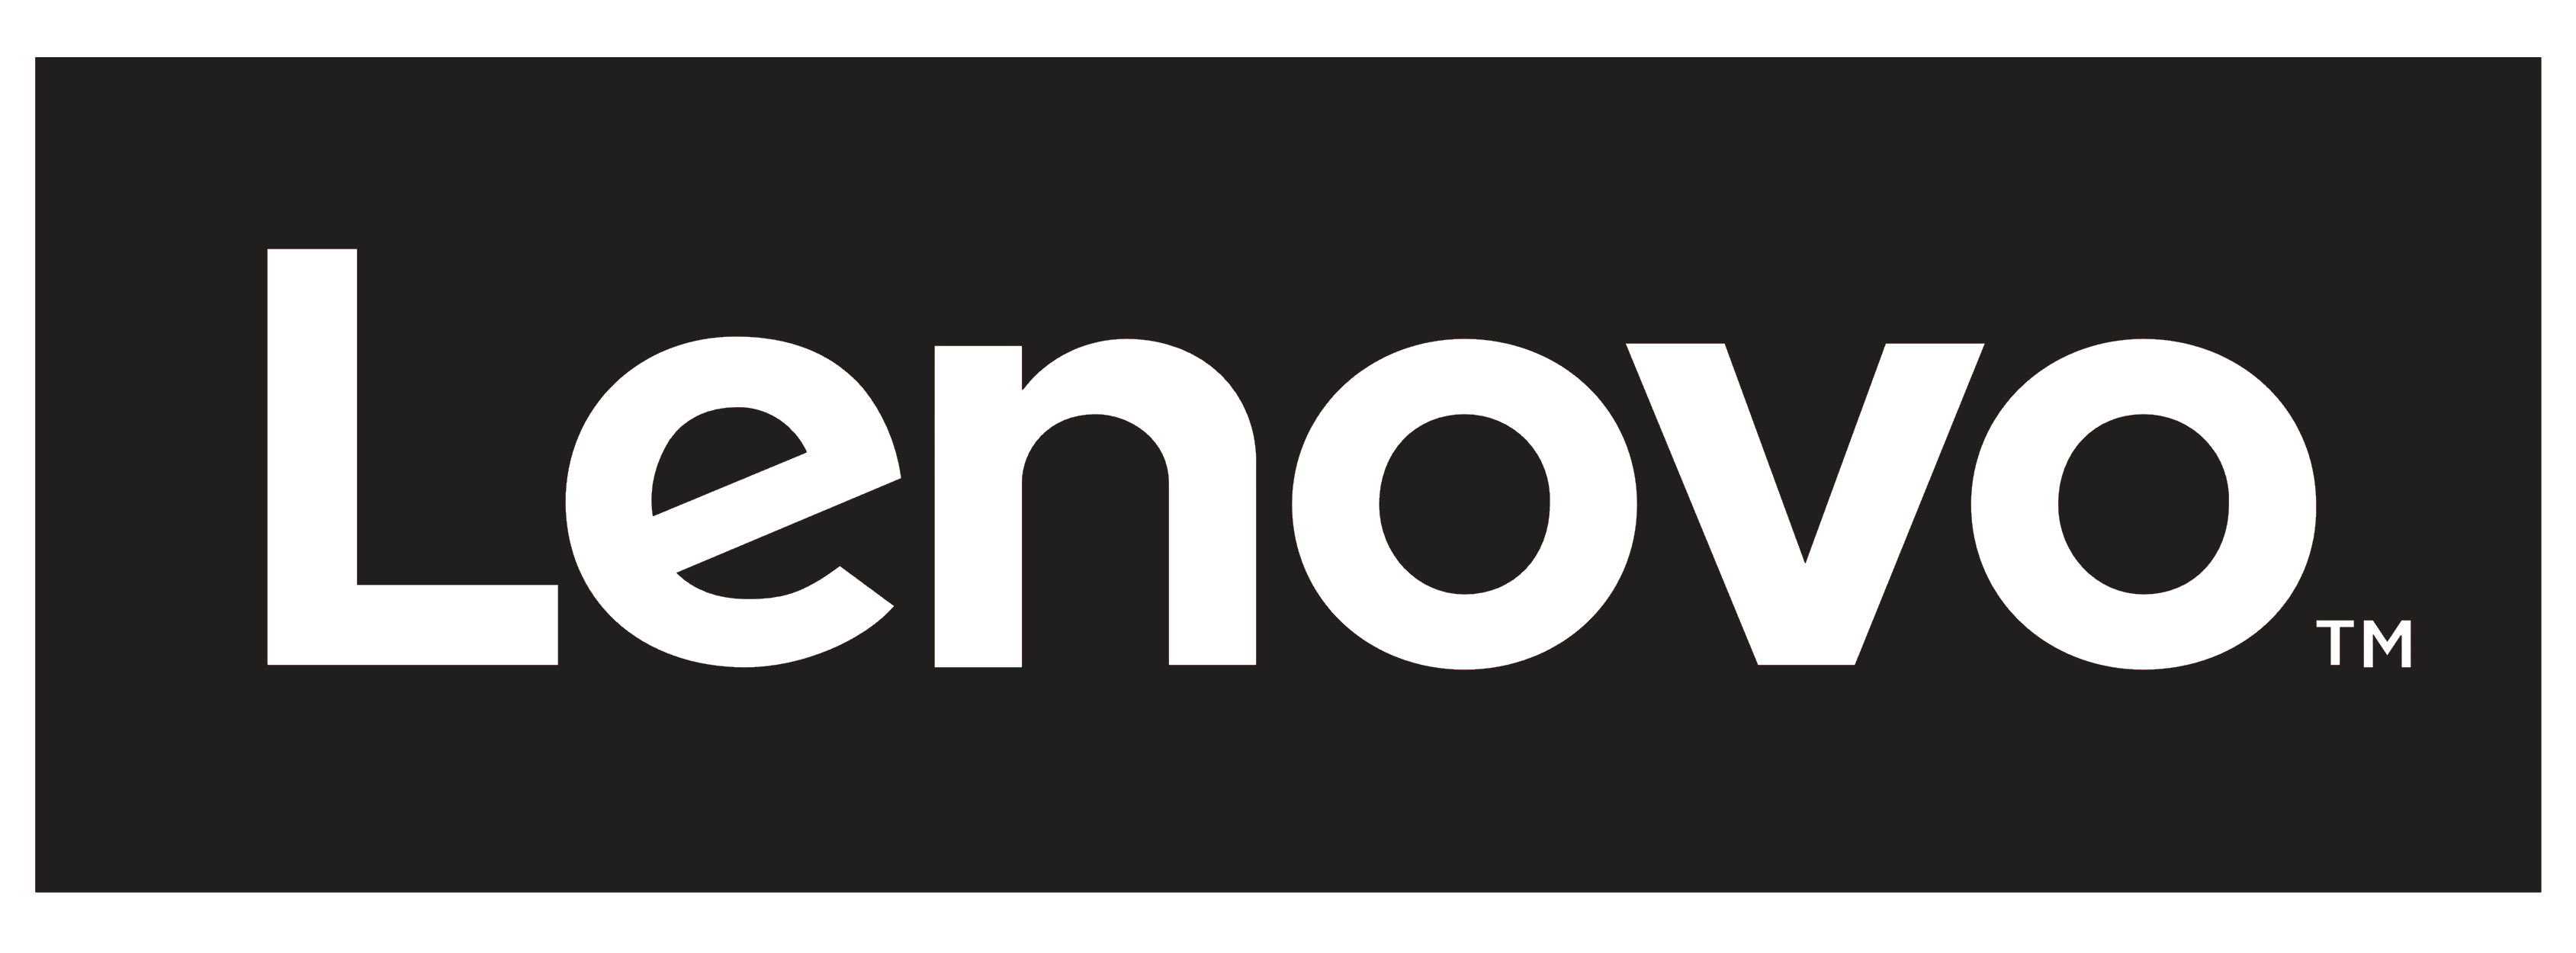 Lenovo_logo_black